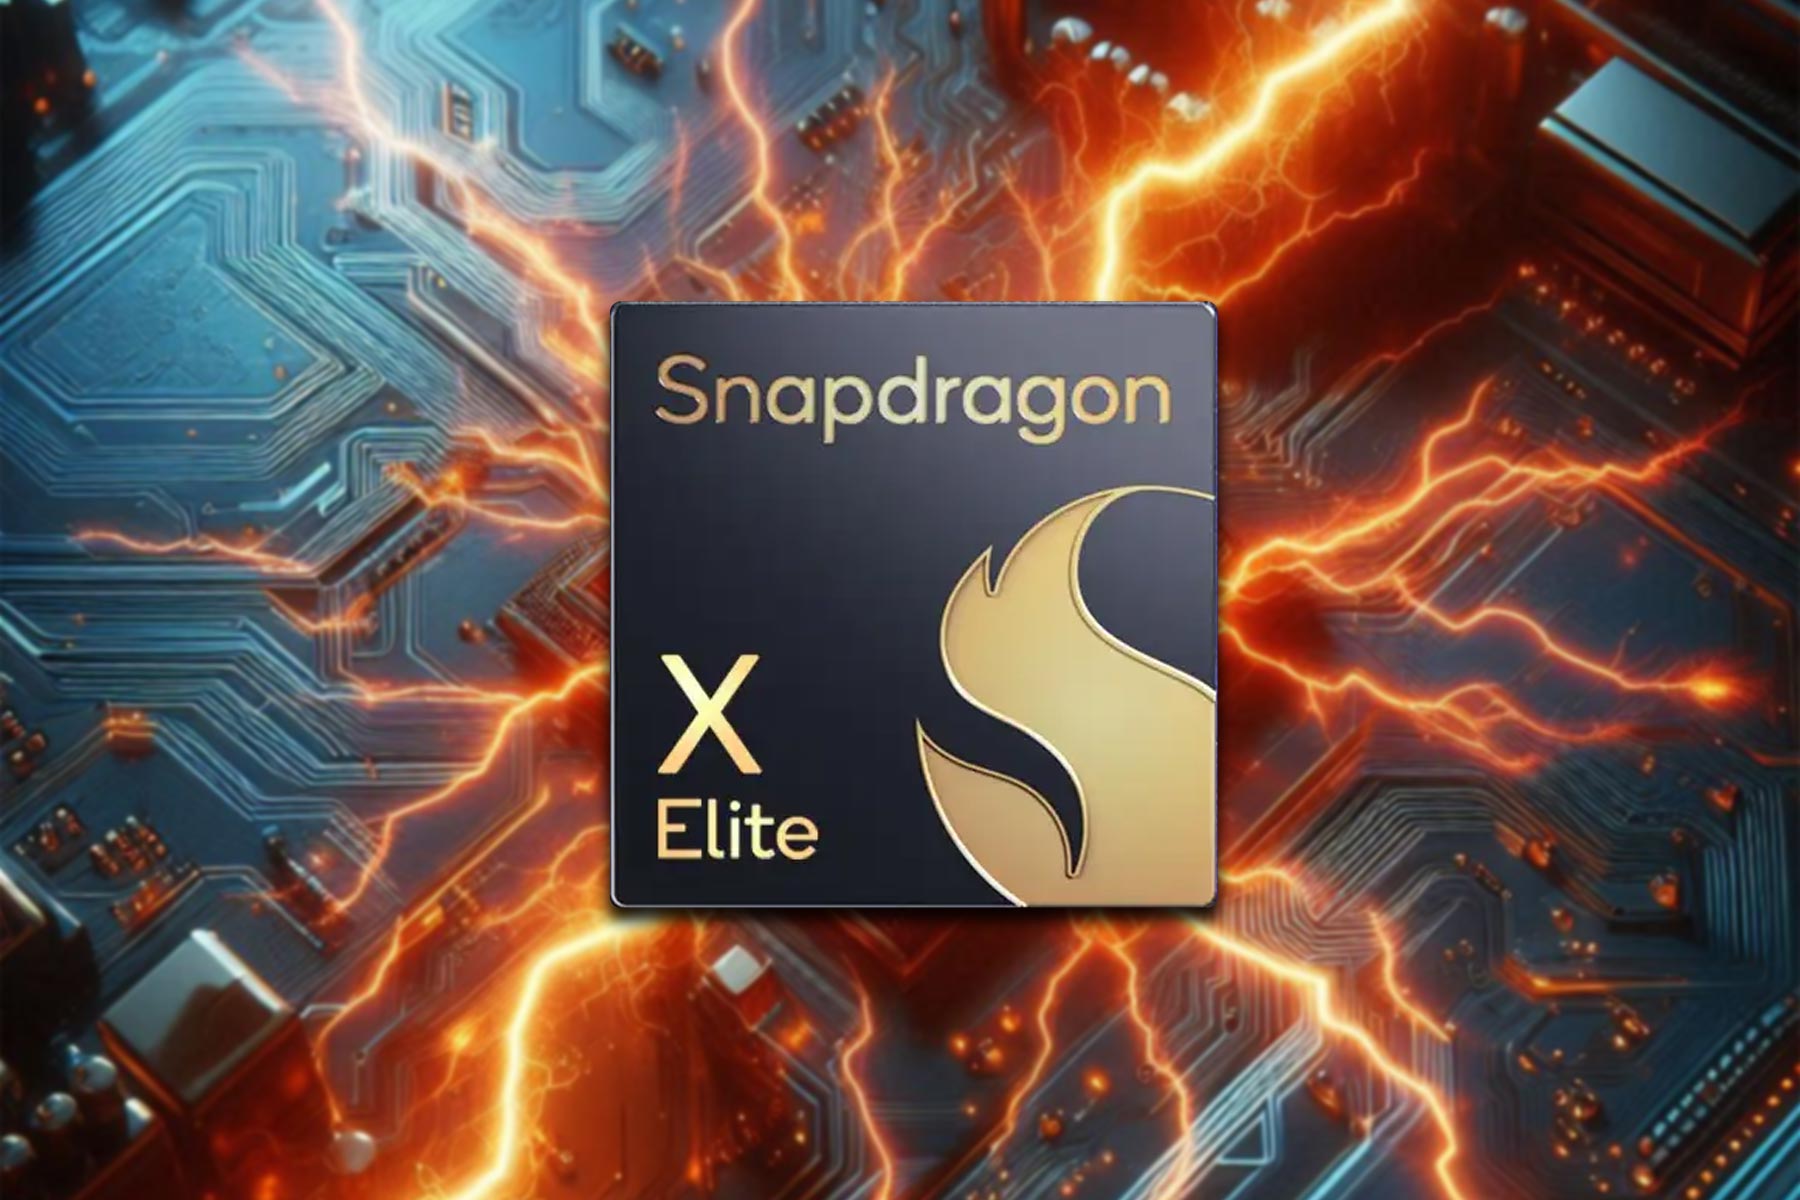 snapdragon x elite comparison